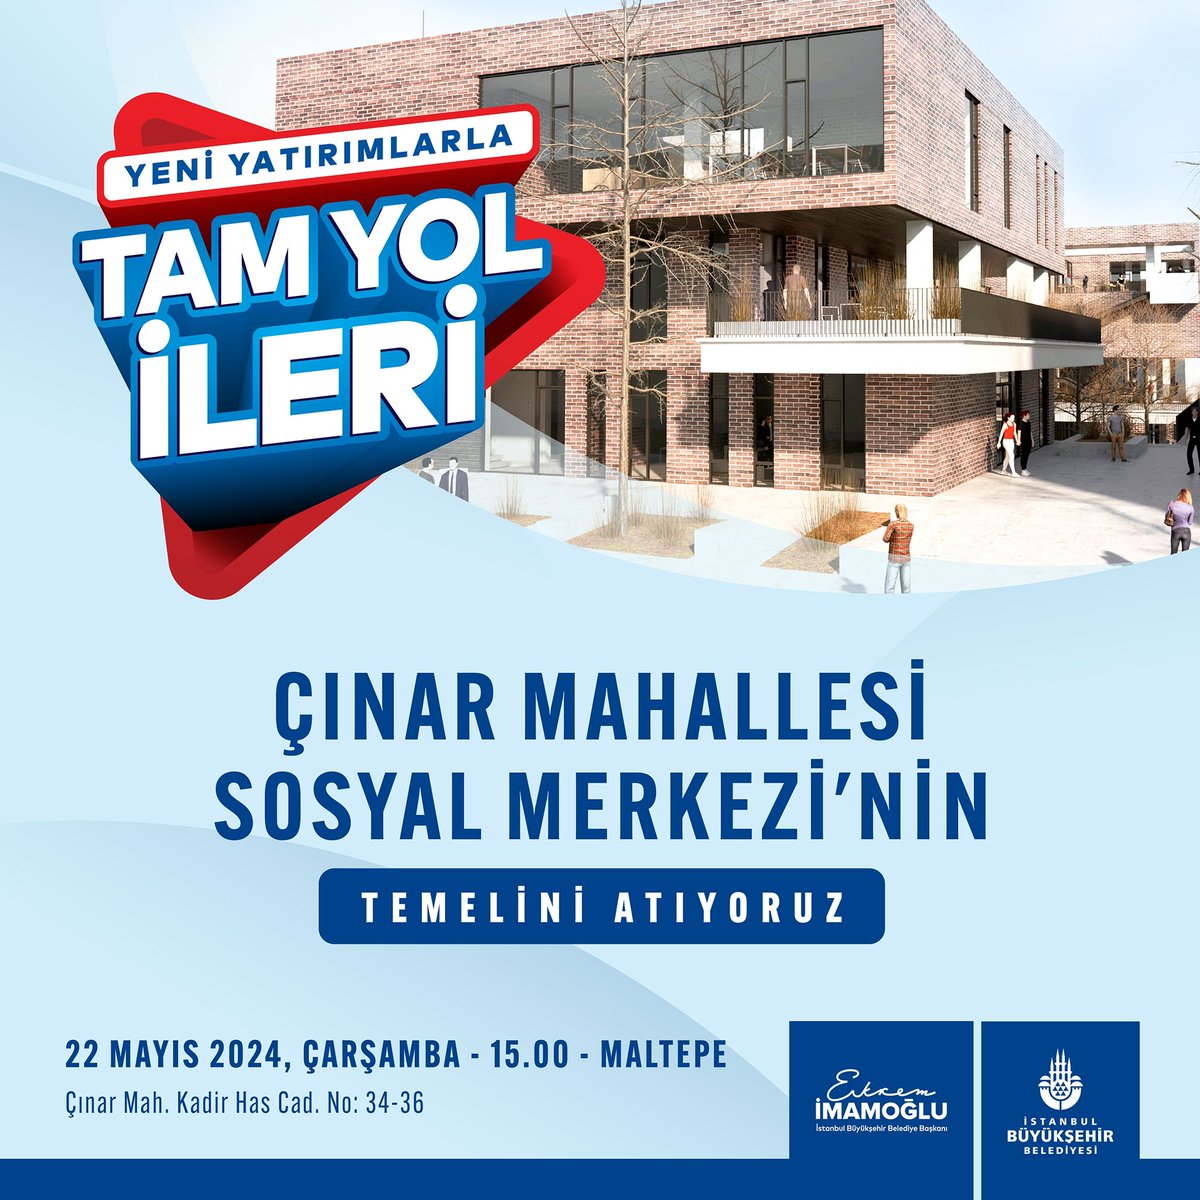 Maltepe Çınar Mahallesi Sosyal Merkezi’nin temel atma törenine tüm vatandaşlarımız davetlidir. 🕰️22 Mayıs Çarşamba - 15.00 📍Çınar Mahallesi Kadir Has Caddesi No:34-36 - Maltepe